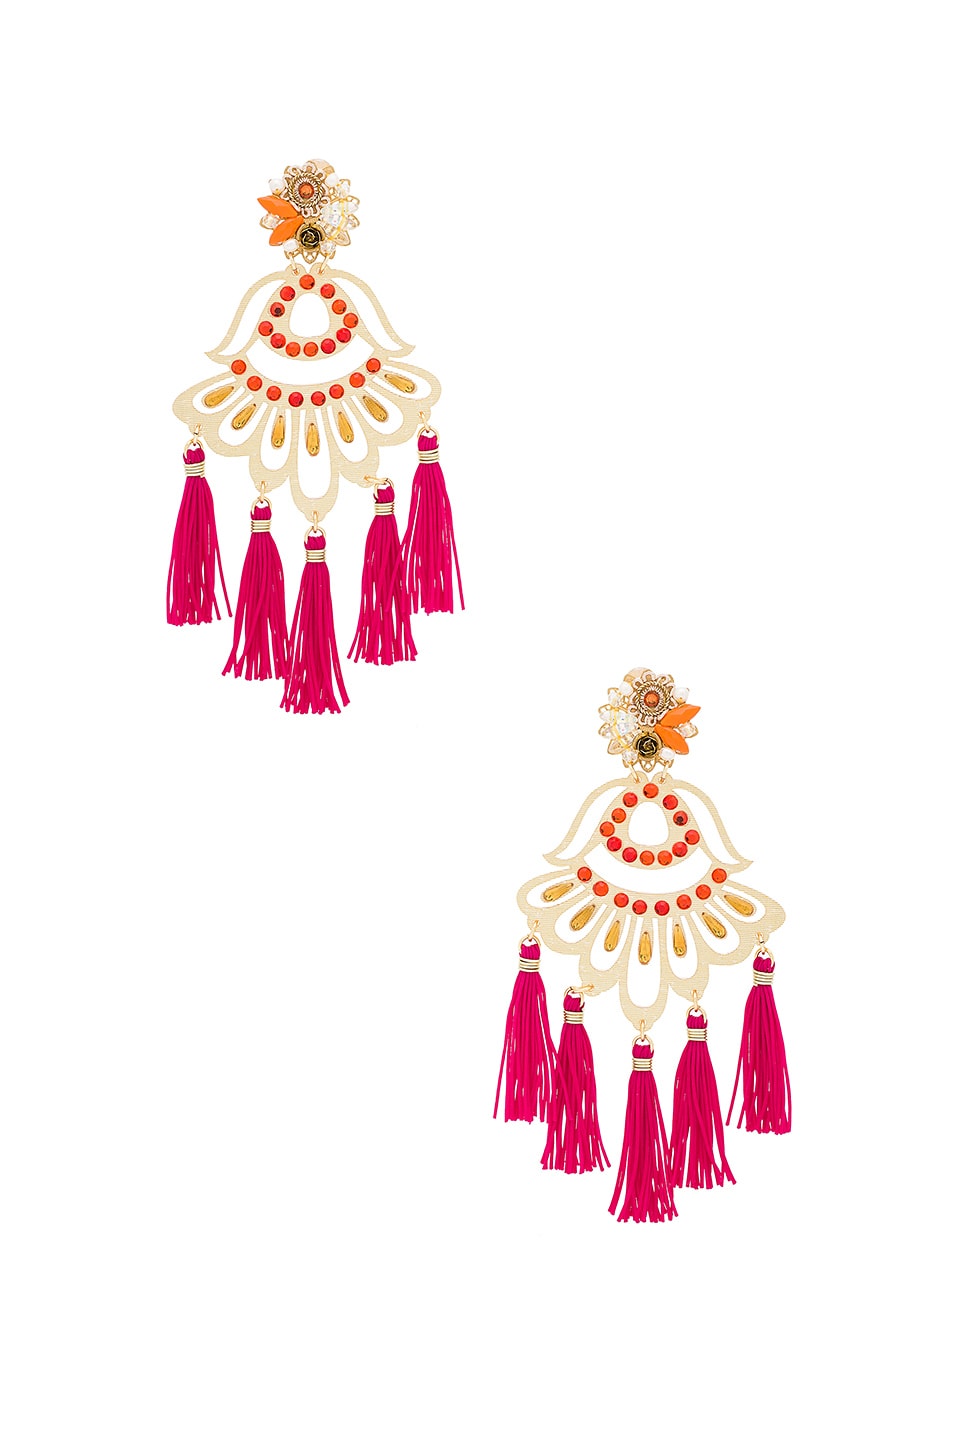 Beautiful tassel earrings